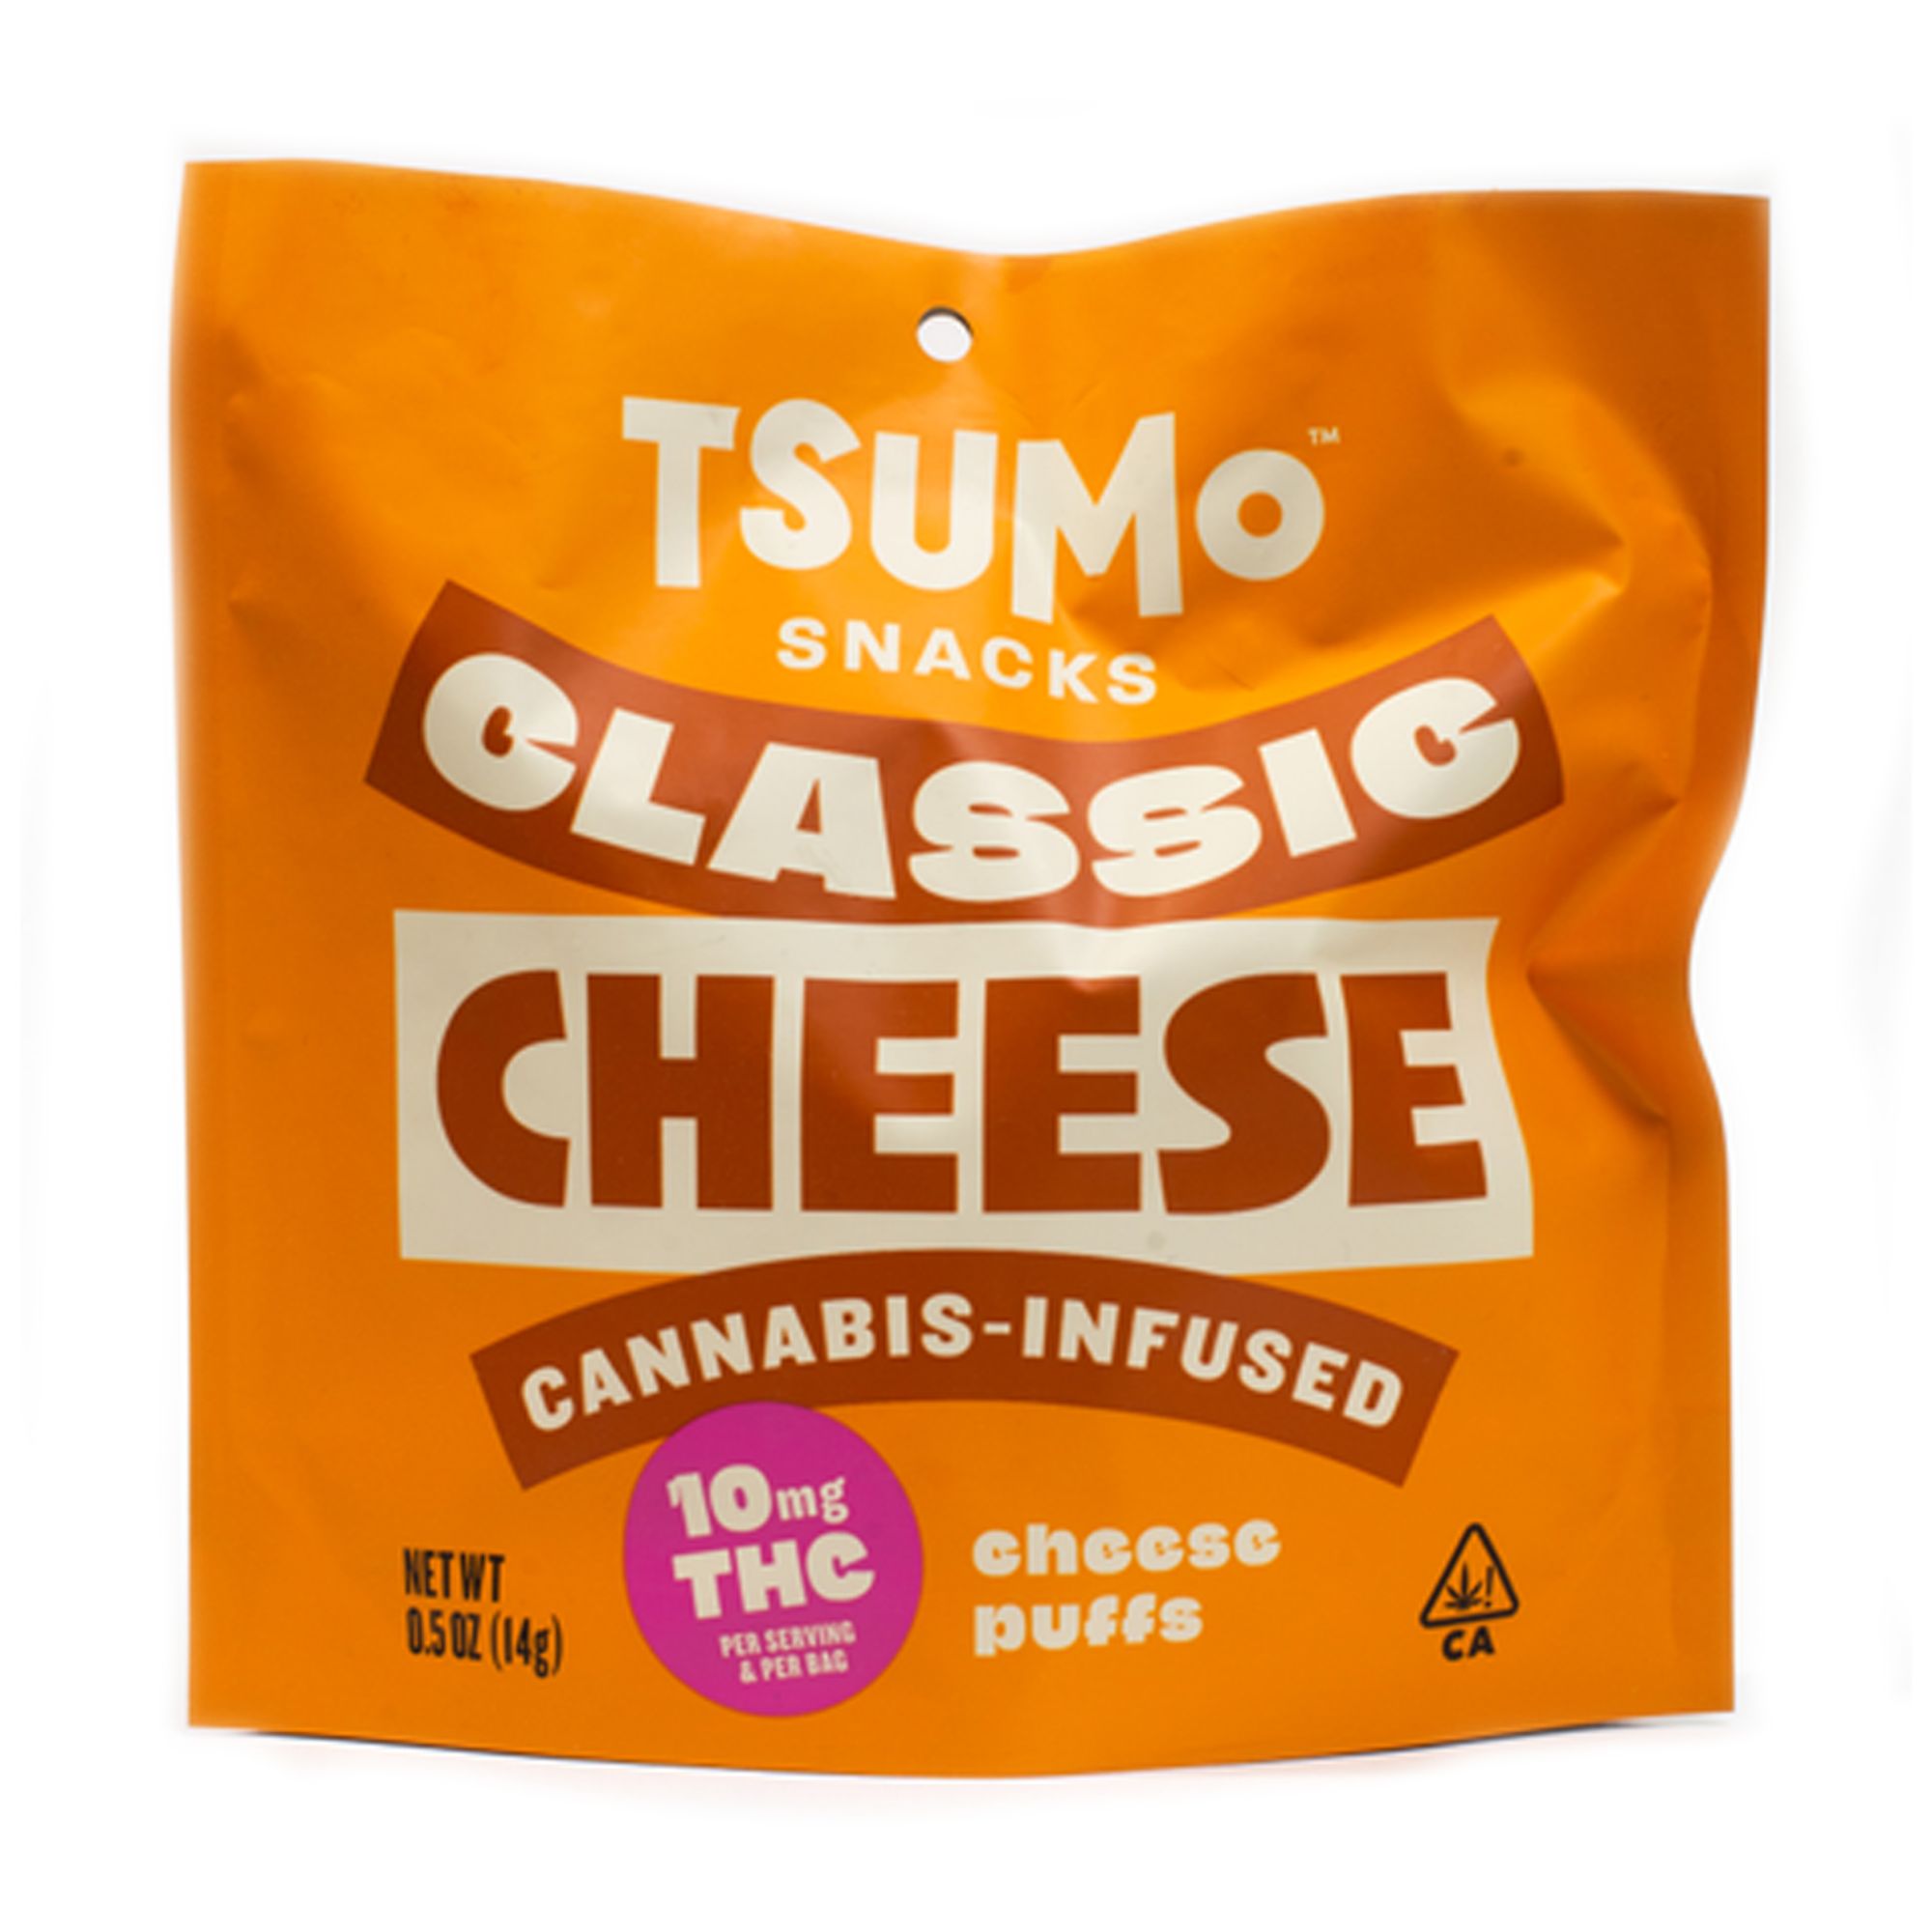 TSUMoSNACKS CLASSIC CHEESE - Cheese Crunchers Singles